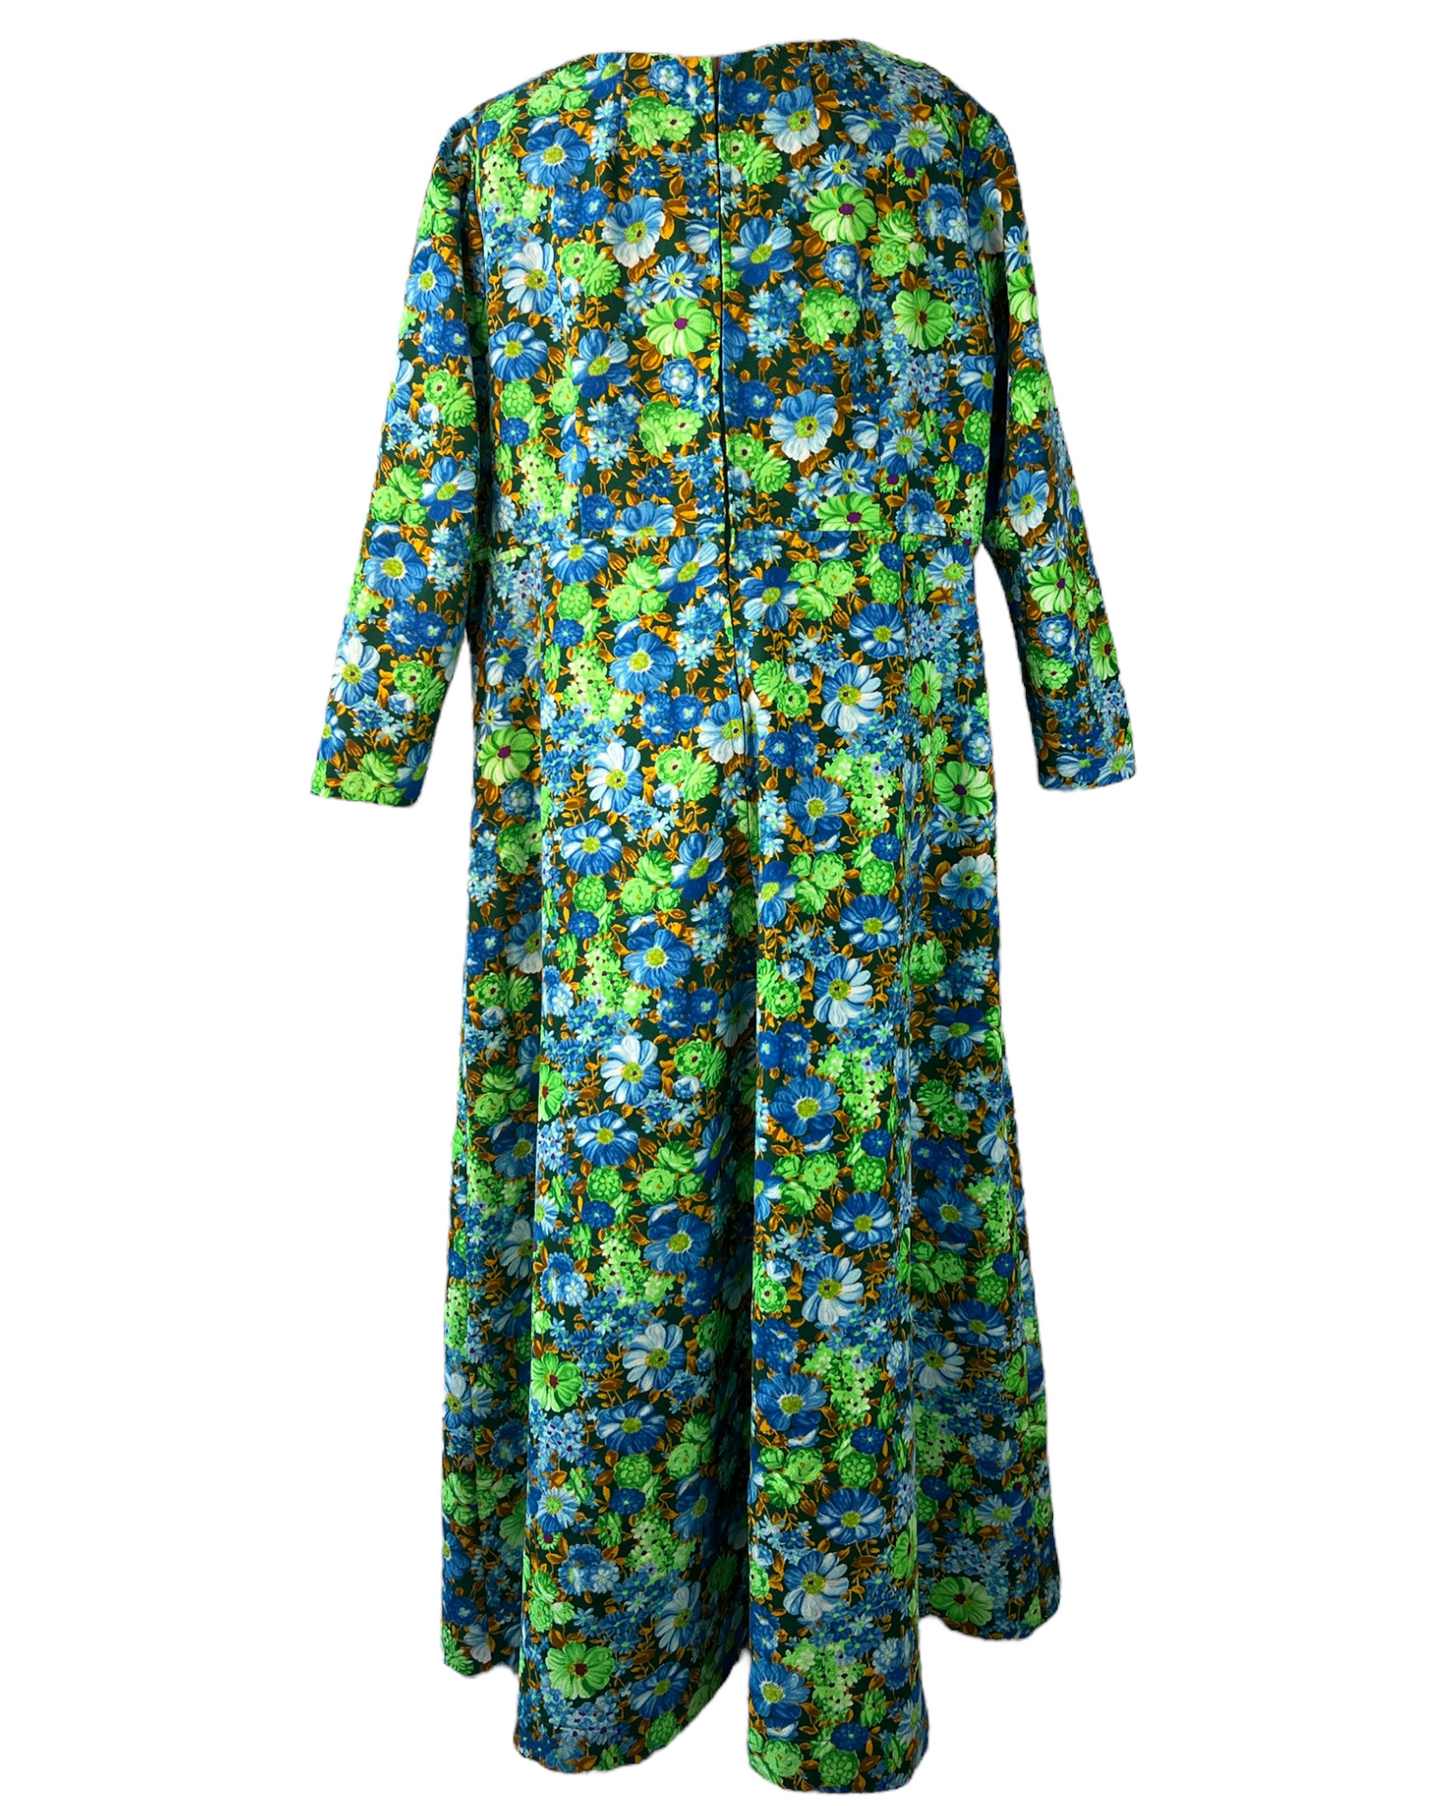 1970s Cool Toned Garden Dress